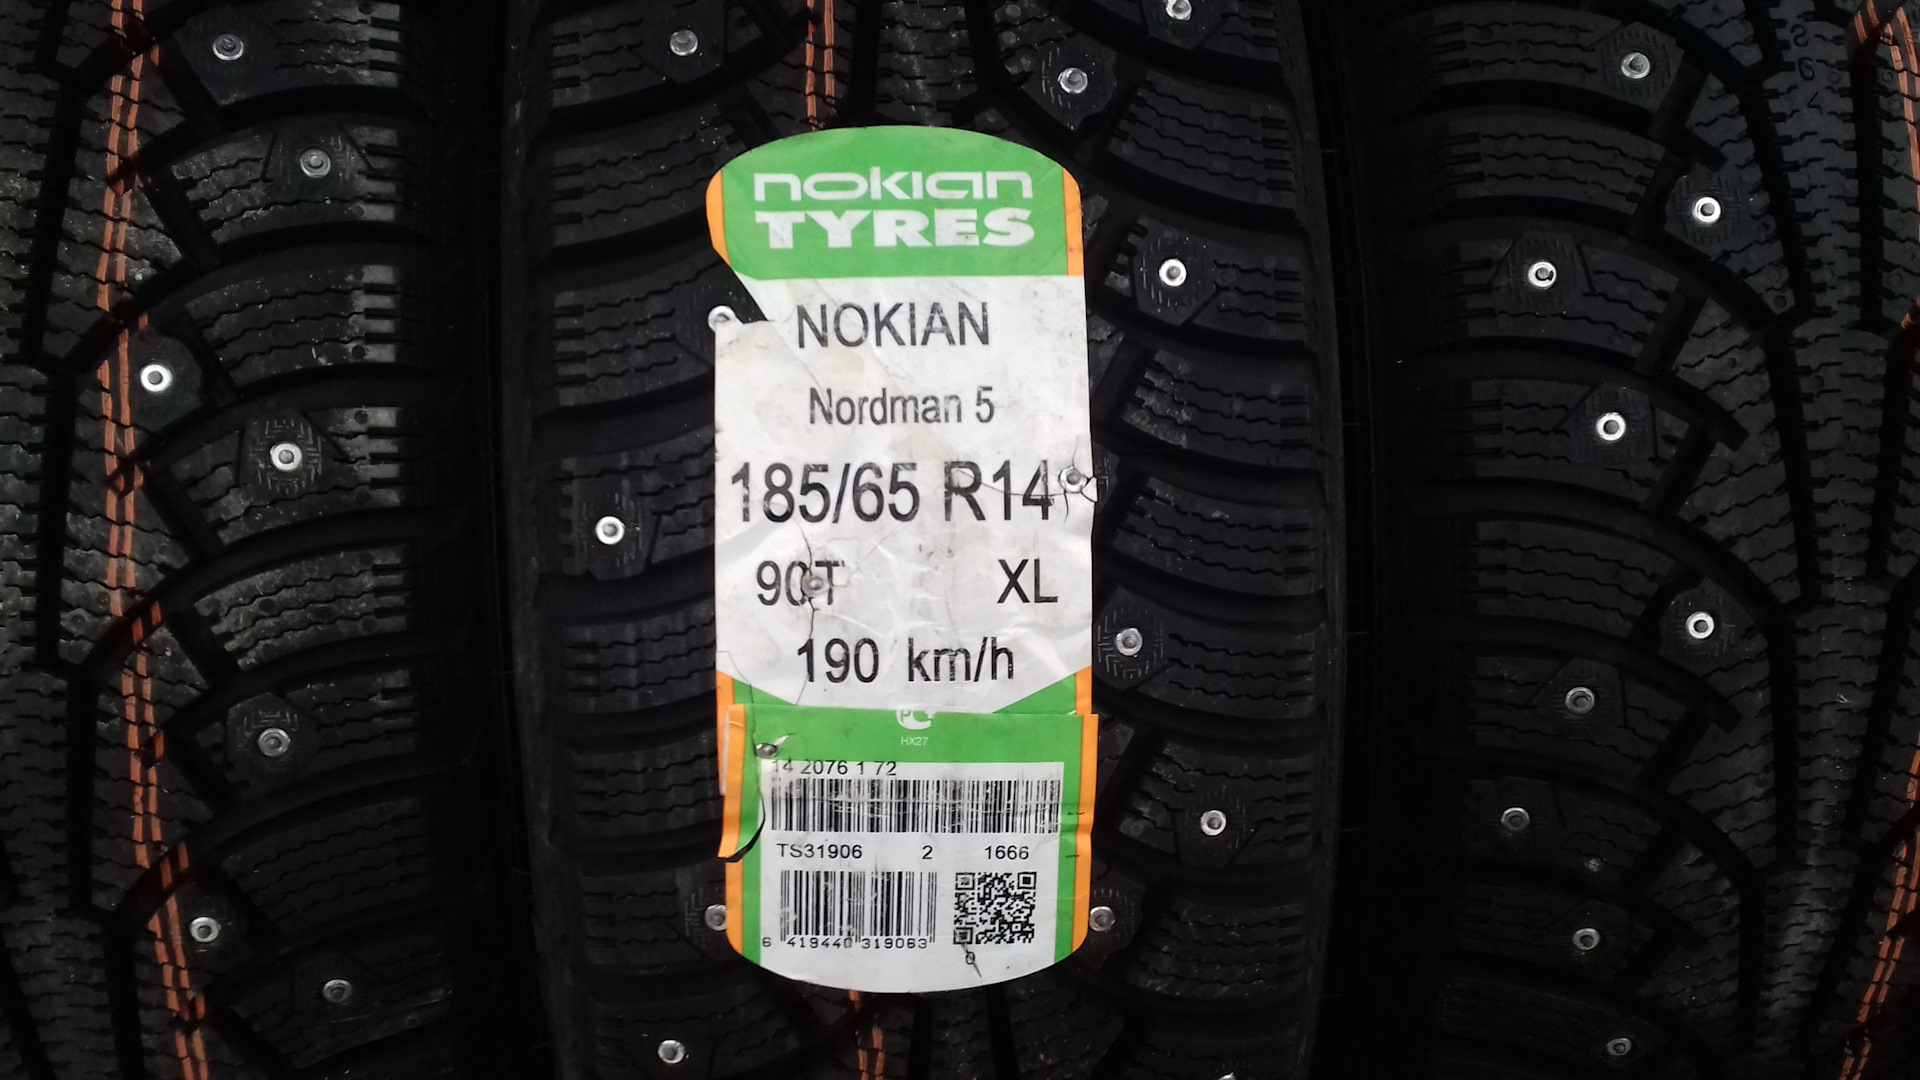 Шины нокиан купить в спб. Nordman 5. Нокиан Нордман 5 185/65 r14. Nokia Nordman 5. Нокиан 185/65/14 зима.